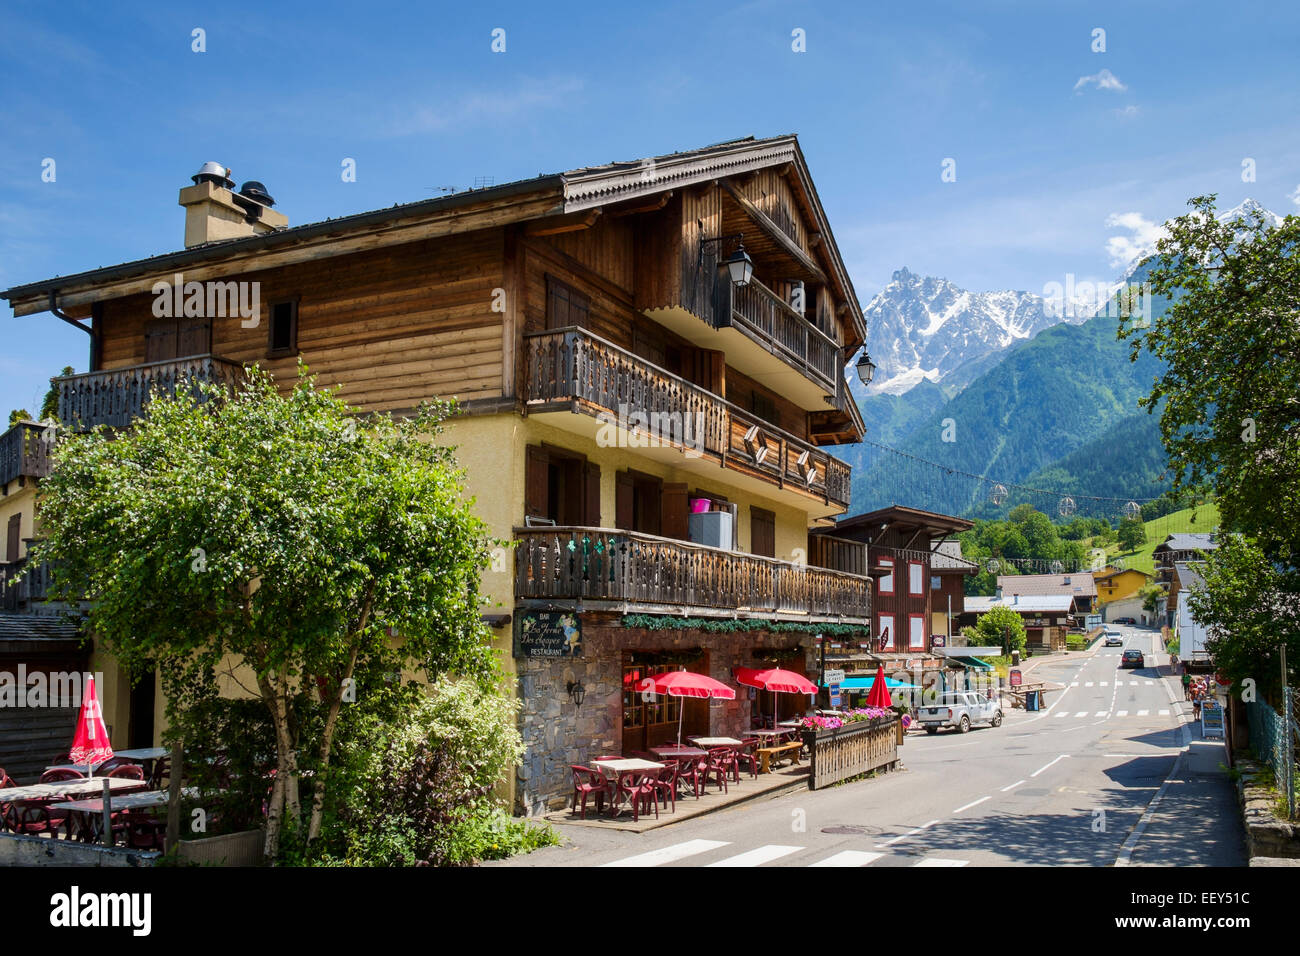 Hotel mit Bar Cafe in Les Houches Dorf, Chamonix Valley Ski Resort, Französische Alpen, Haute-Savoie, Frankreich, Europa - im Sommer Stockfoto